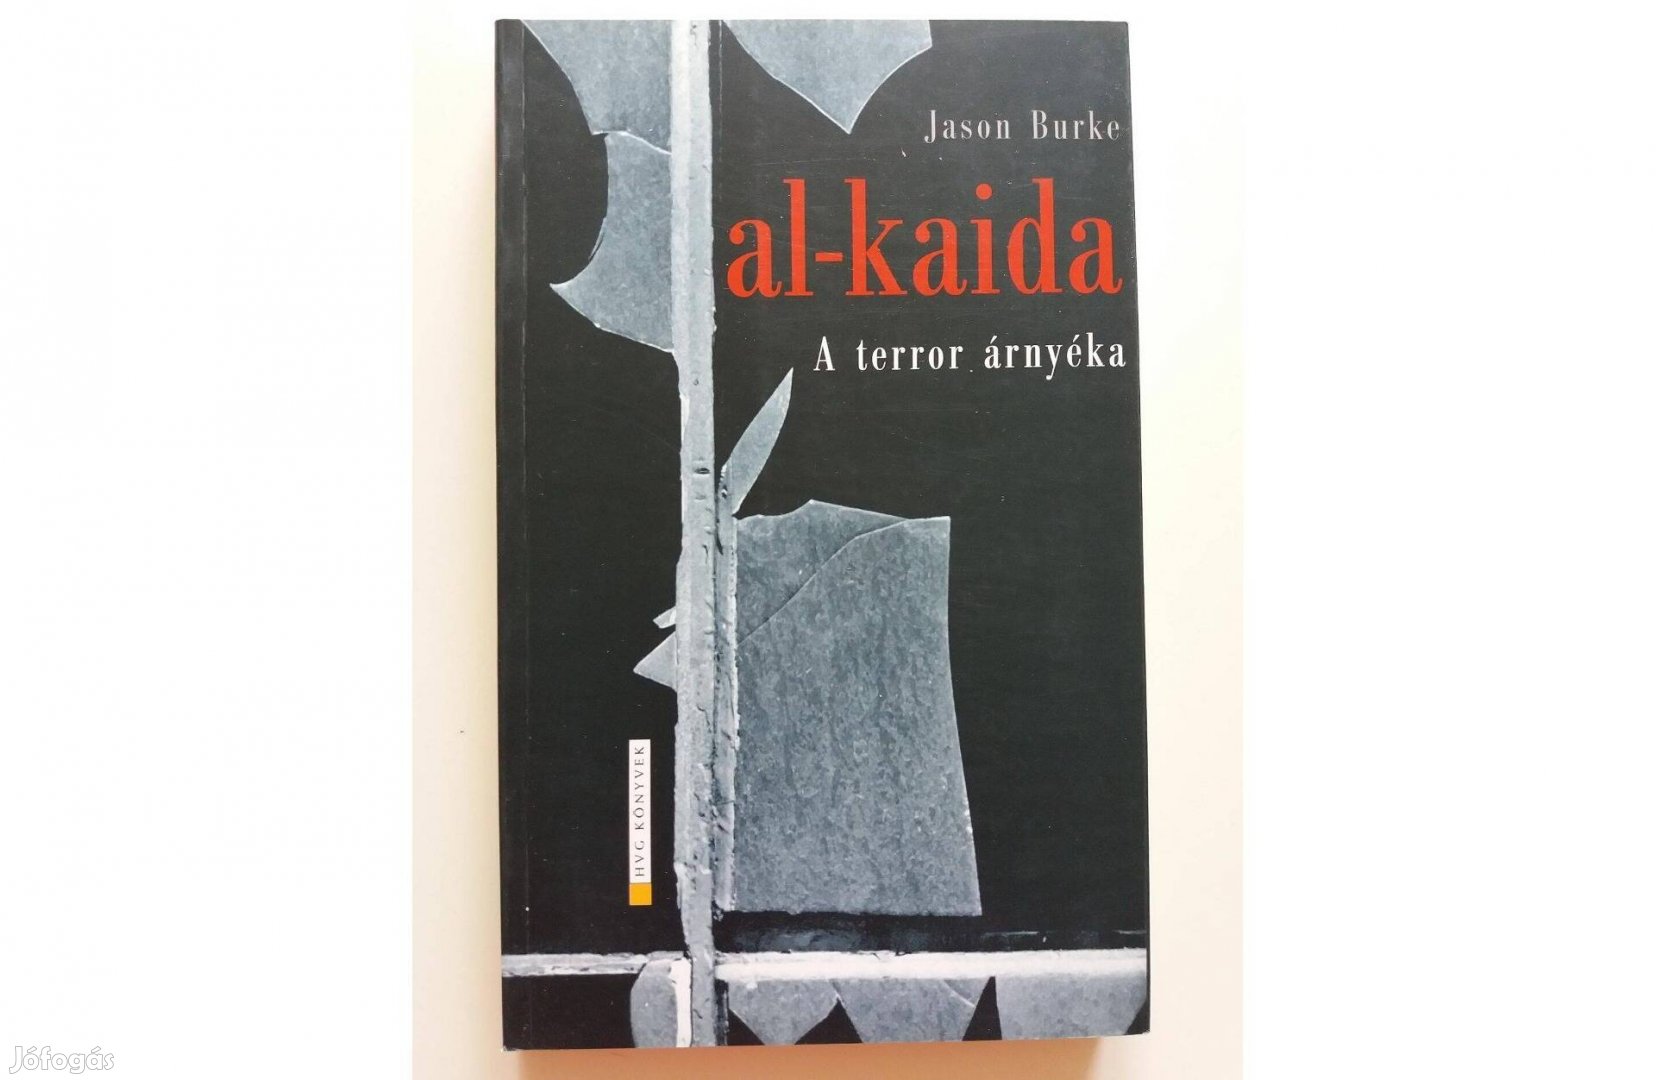 Jason Burke: al-kaida (A terror árnyéka)